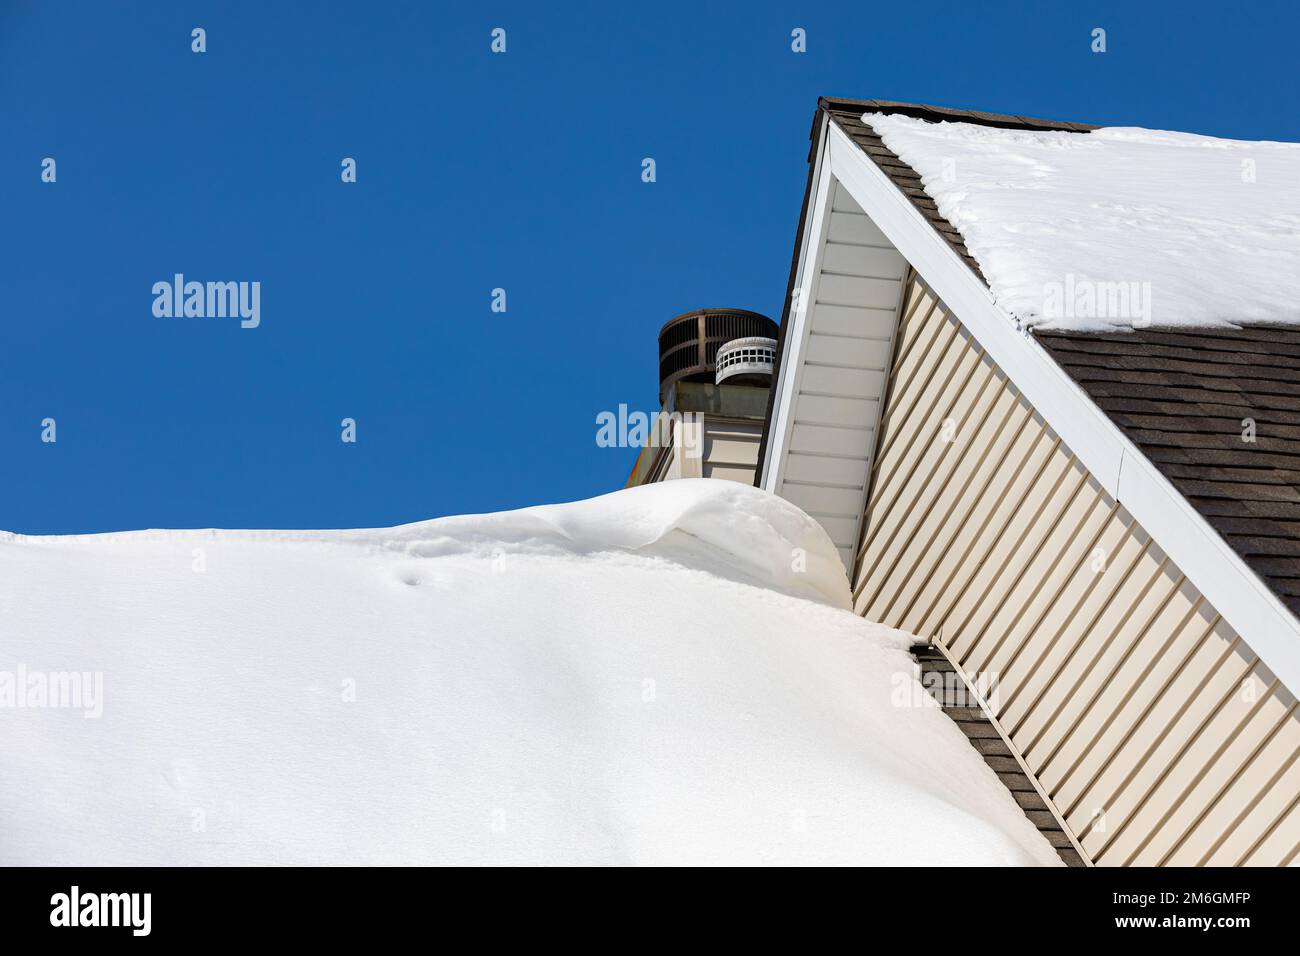 Schneeverwehung auf dem Dach des Hauses nach Wintersturm. Dachschäden, Schneeräumung, Hausinstandhaltung und Reparaturkonzept. Stockfoto